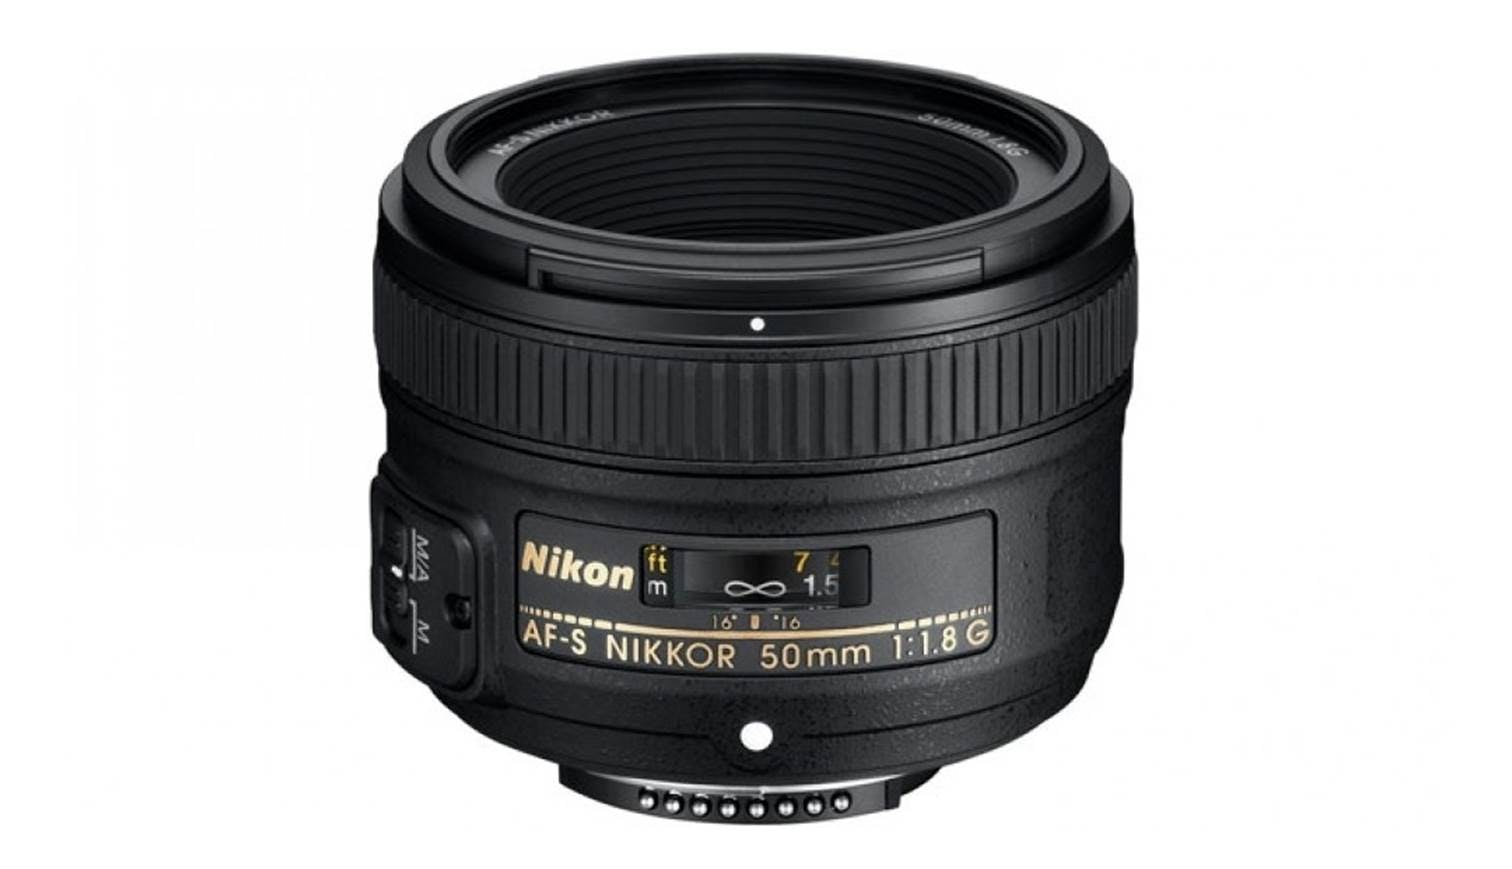 Nikon AF-S Nikkor 50mm F1.8G | Harvey Norman Singapore